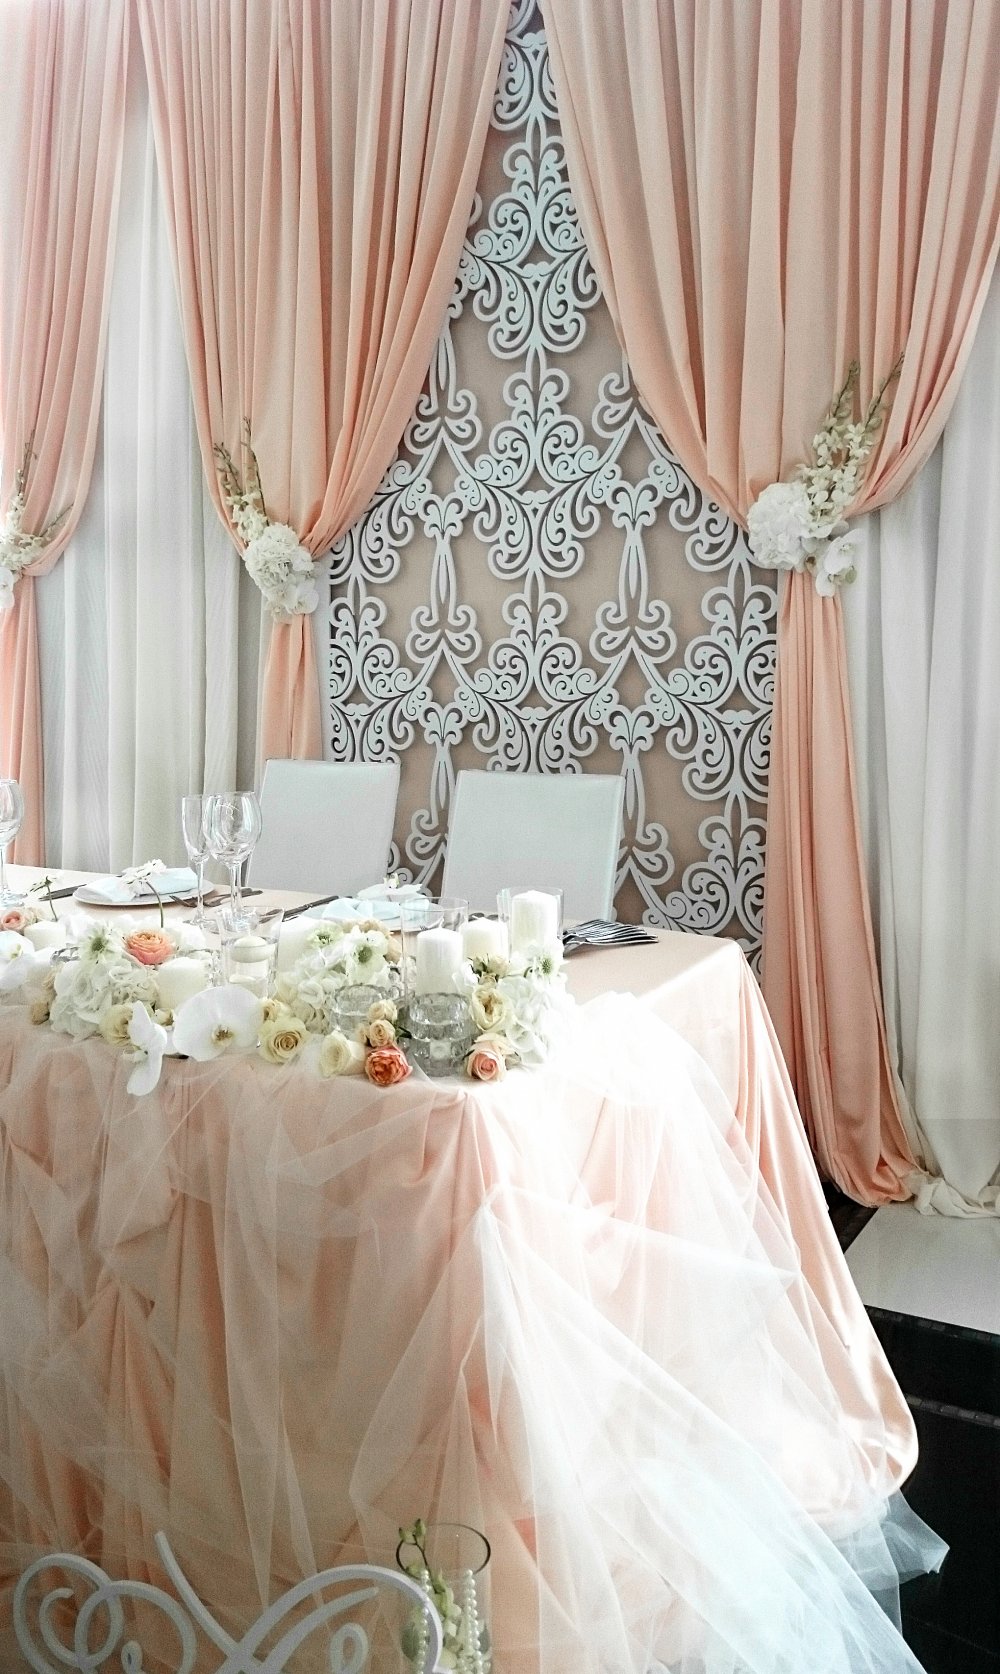 Драпированный задник за столом жениха и невесты, украшенный резной панелью и живыми цветами